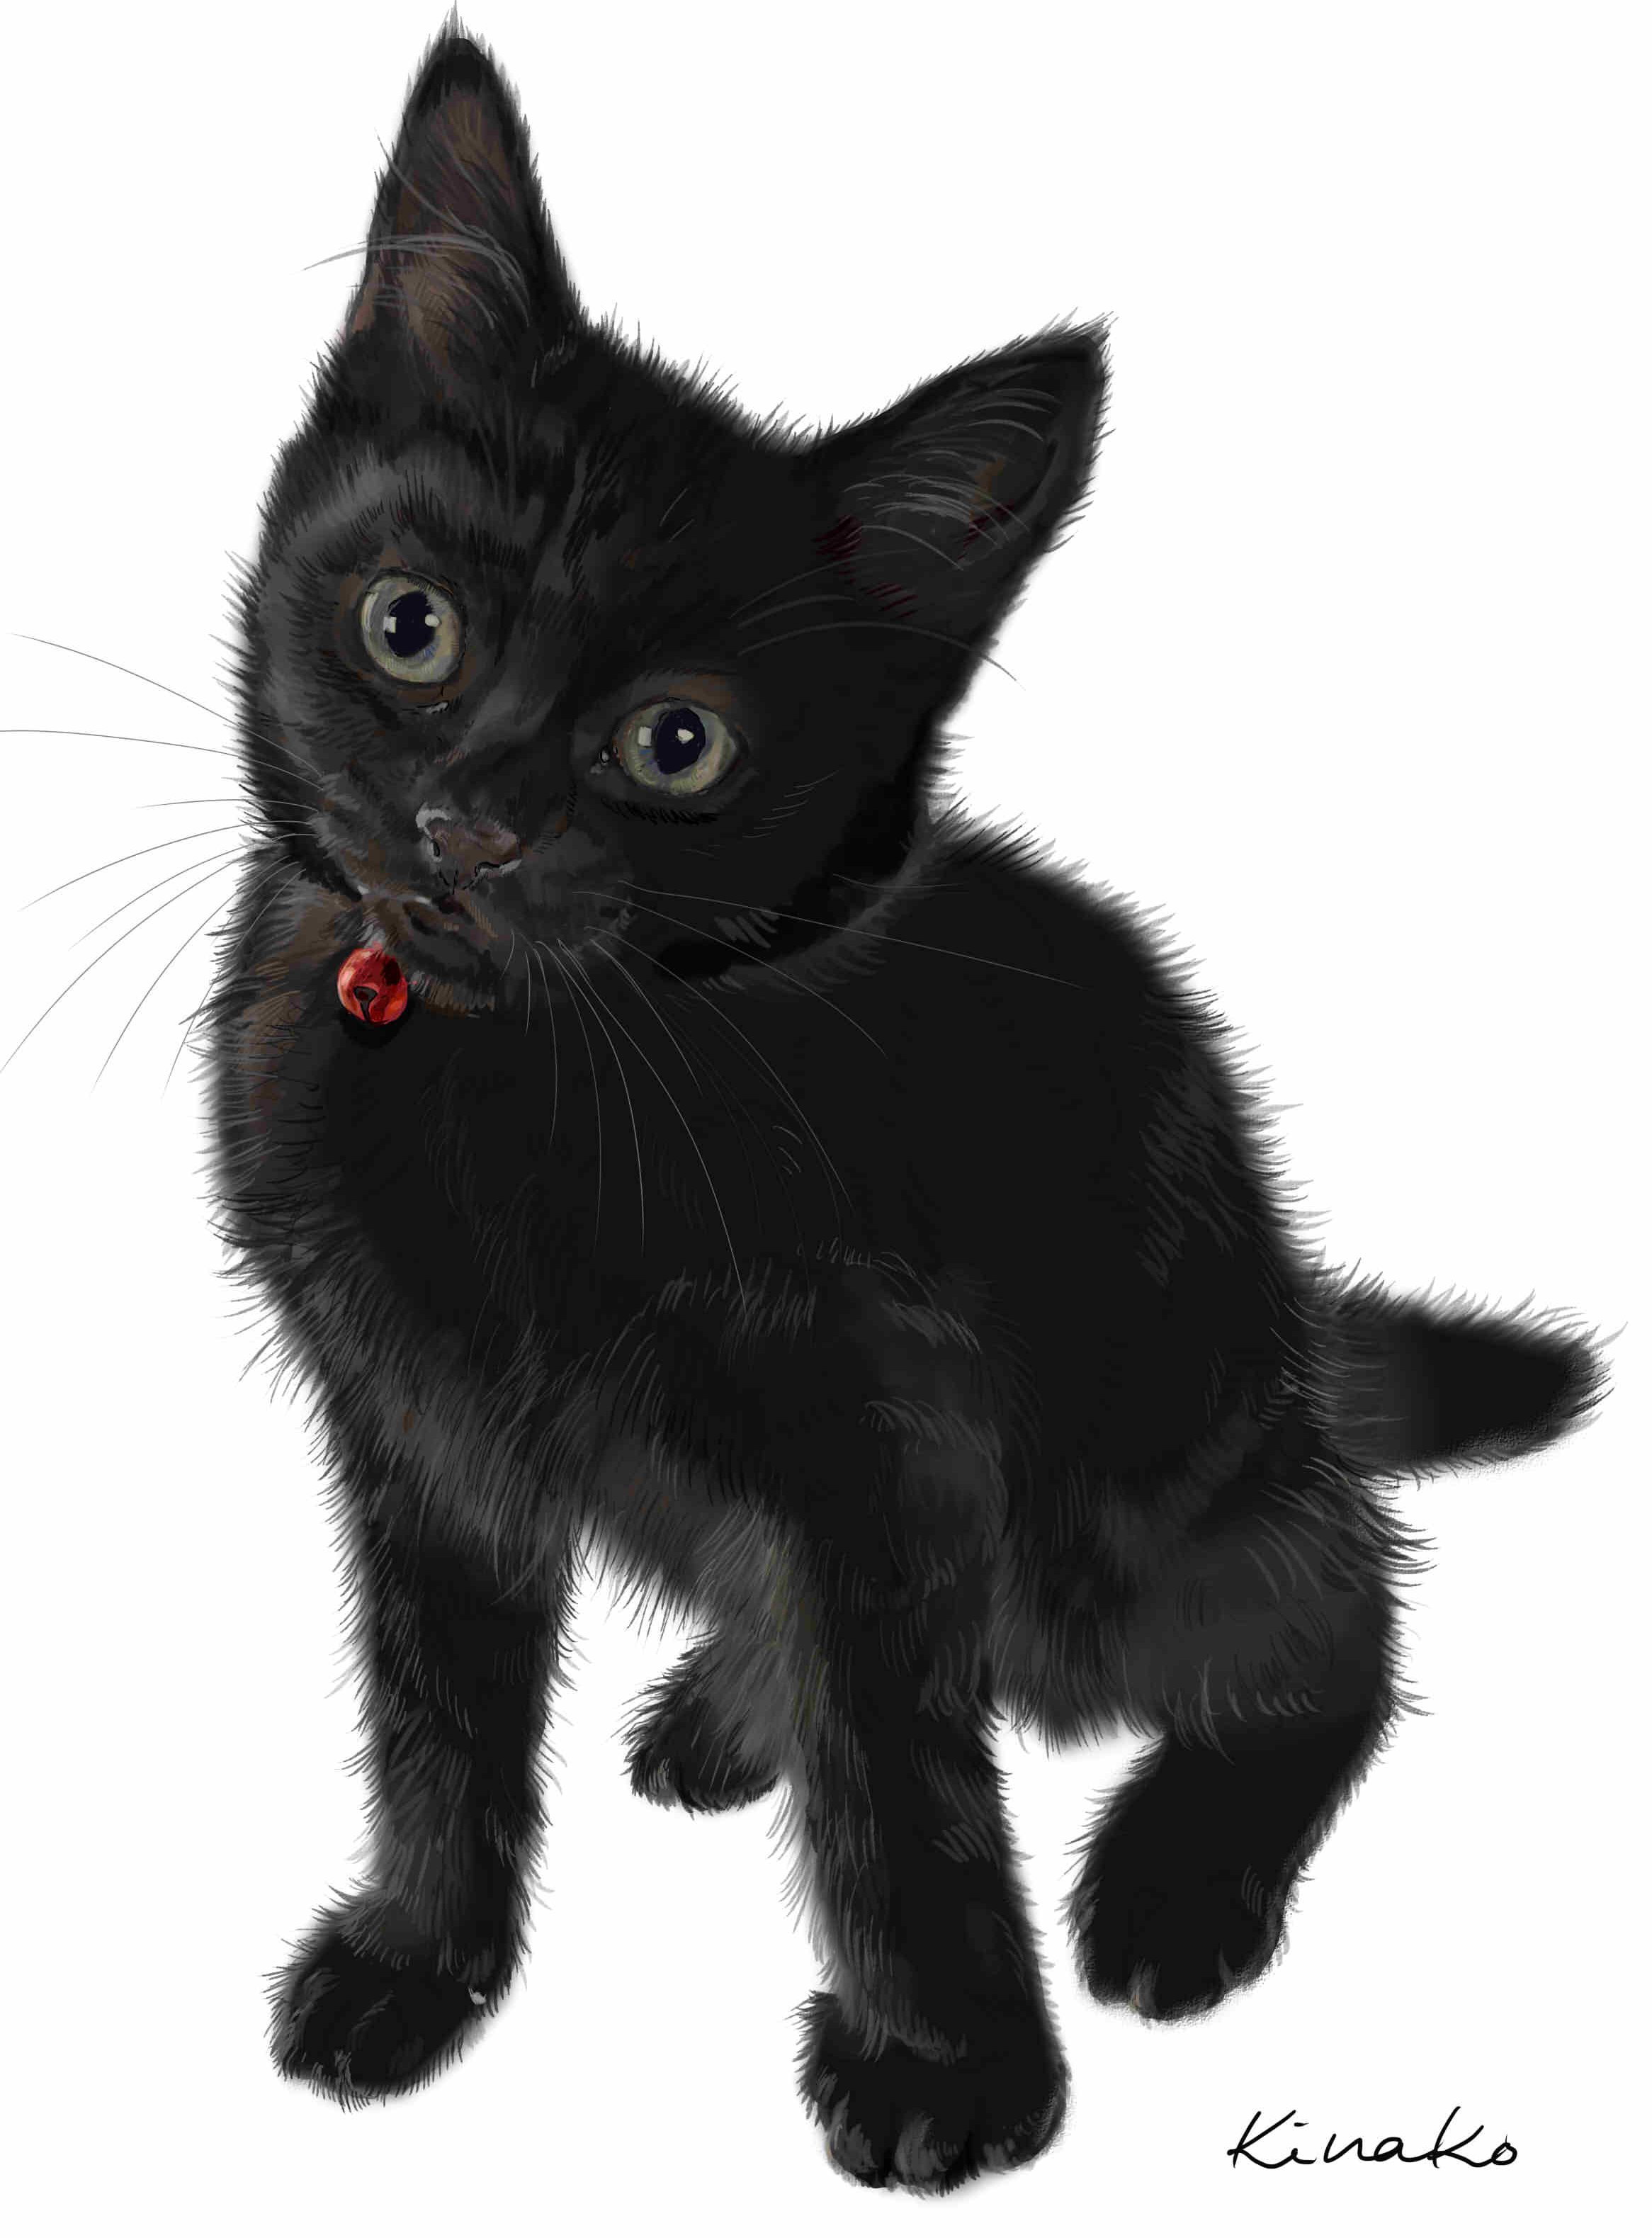 きなこ 猫の絵を描いています 先日描いた 黒みつちゃん 背景なしもすっきりしていいかなぁと載せてみました 2枚を組み合わせて 便箋作ったらどうかな 繰り返し並べてみようかな アイディア広がります 猫絵 Cat Drawing 猫イラスト